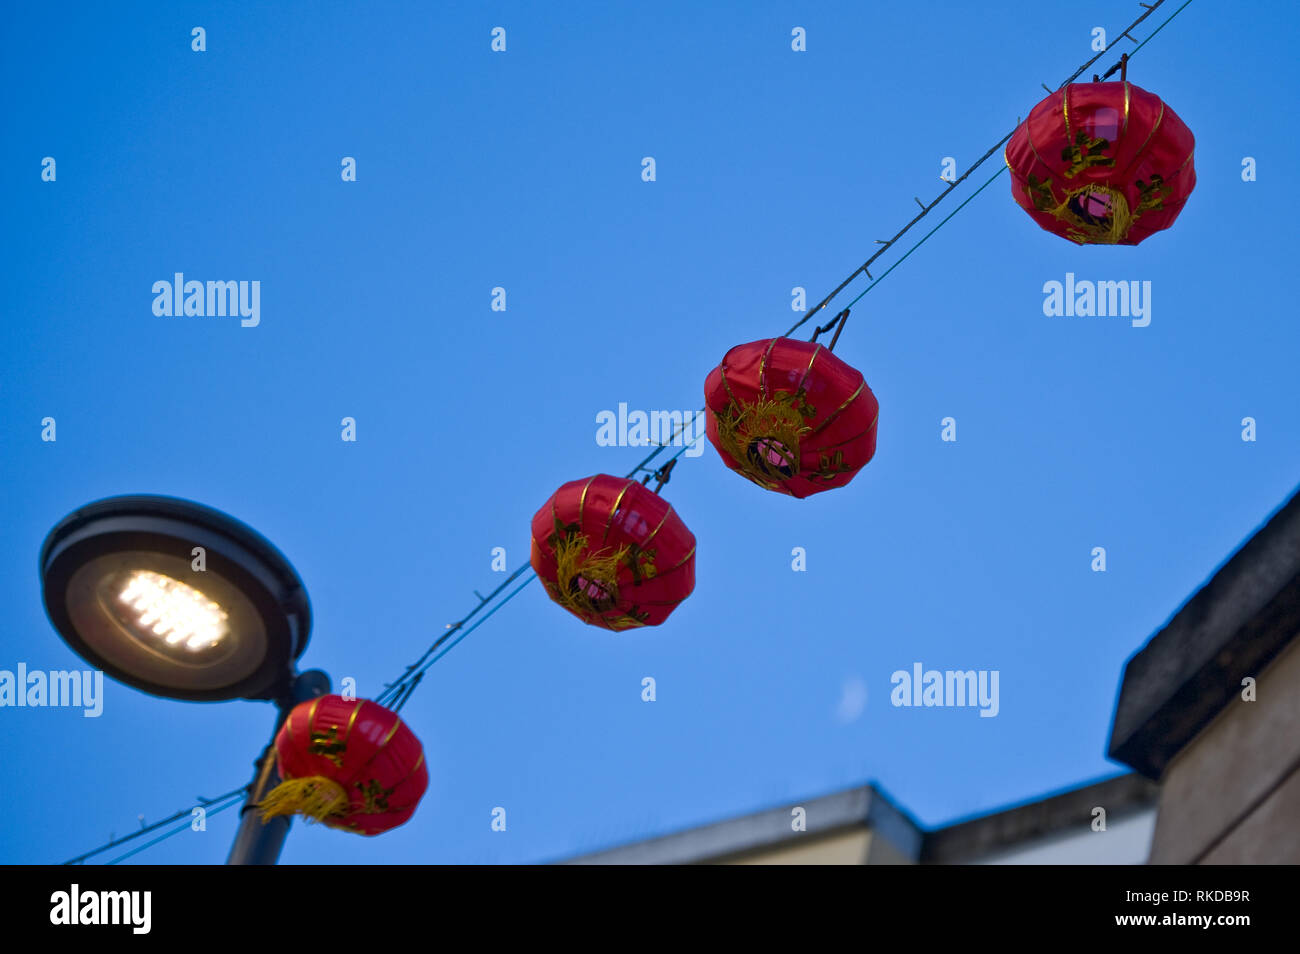 Foto di stock di quattro rosso lanterne cinesi appeso sul filo attraverso una lampada posta contro un cielo blu con luna leggermente visibile in basso a destra. Foto Stock